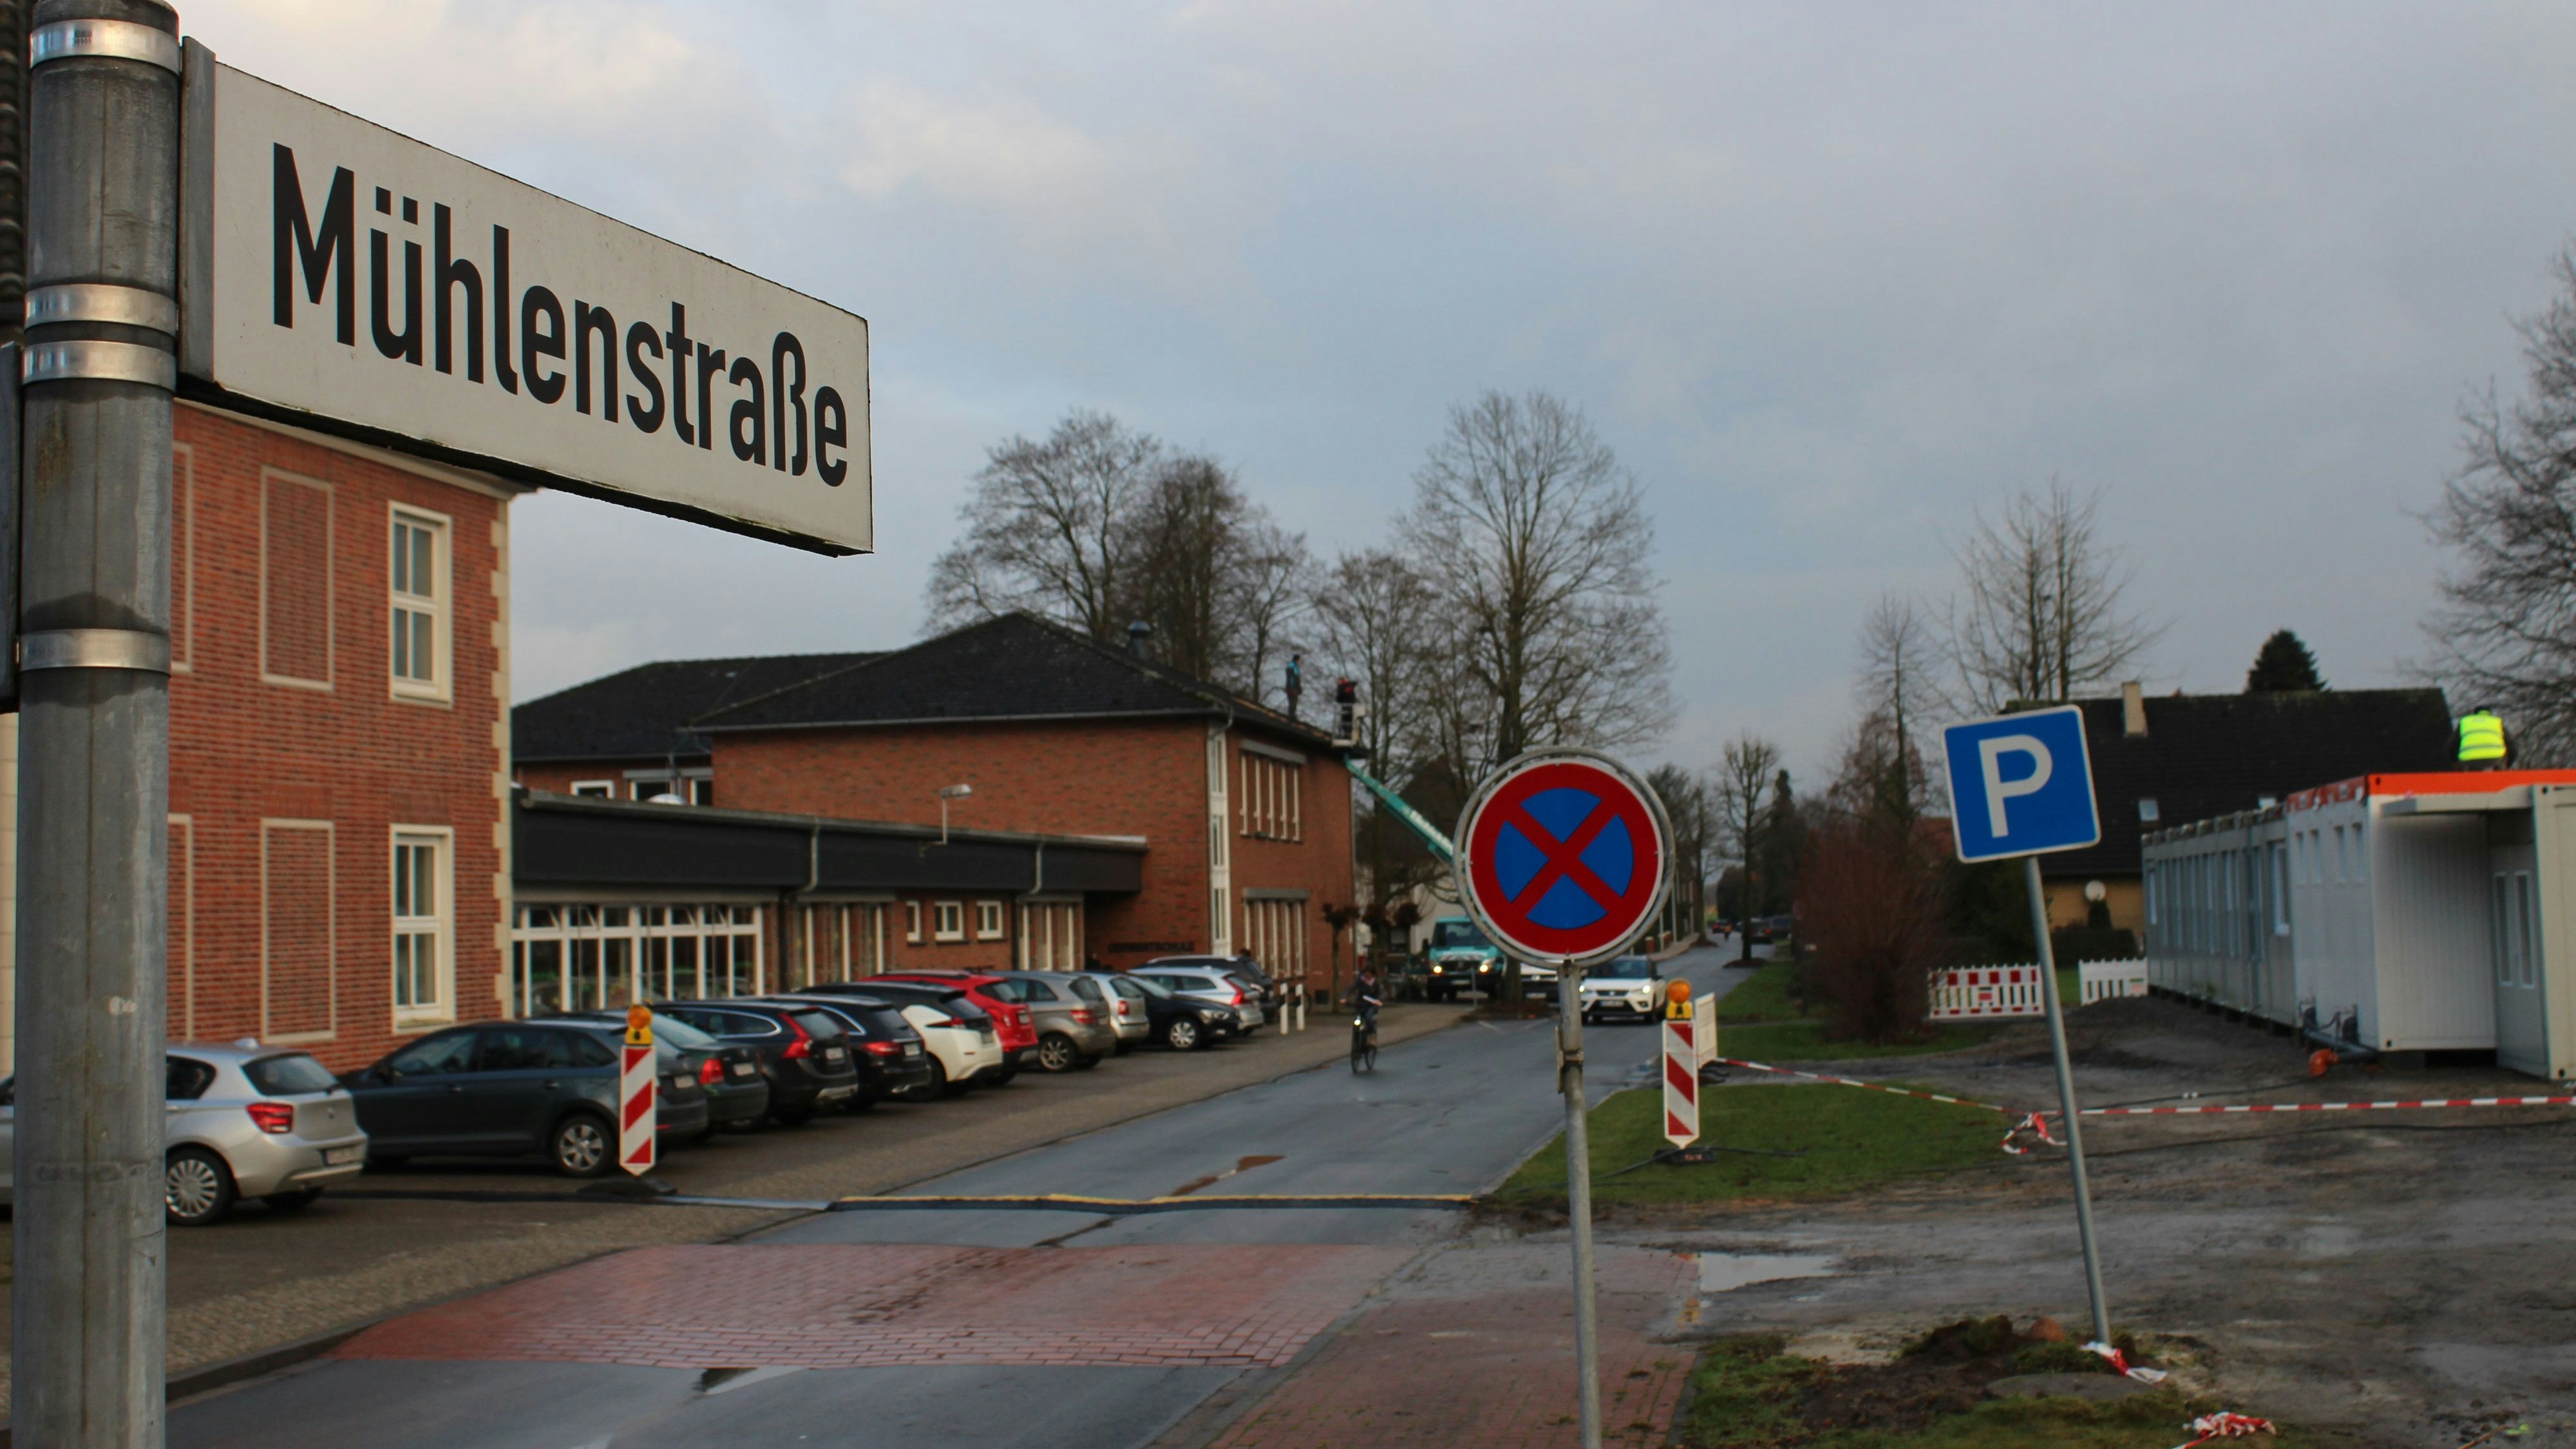 Mühlenstraße wird gesperrt: Es wird ein Baukran aufgestellt, um den mittleren Gebäudeteil um eine Etage aufzustocken. Foto: Heinzel